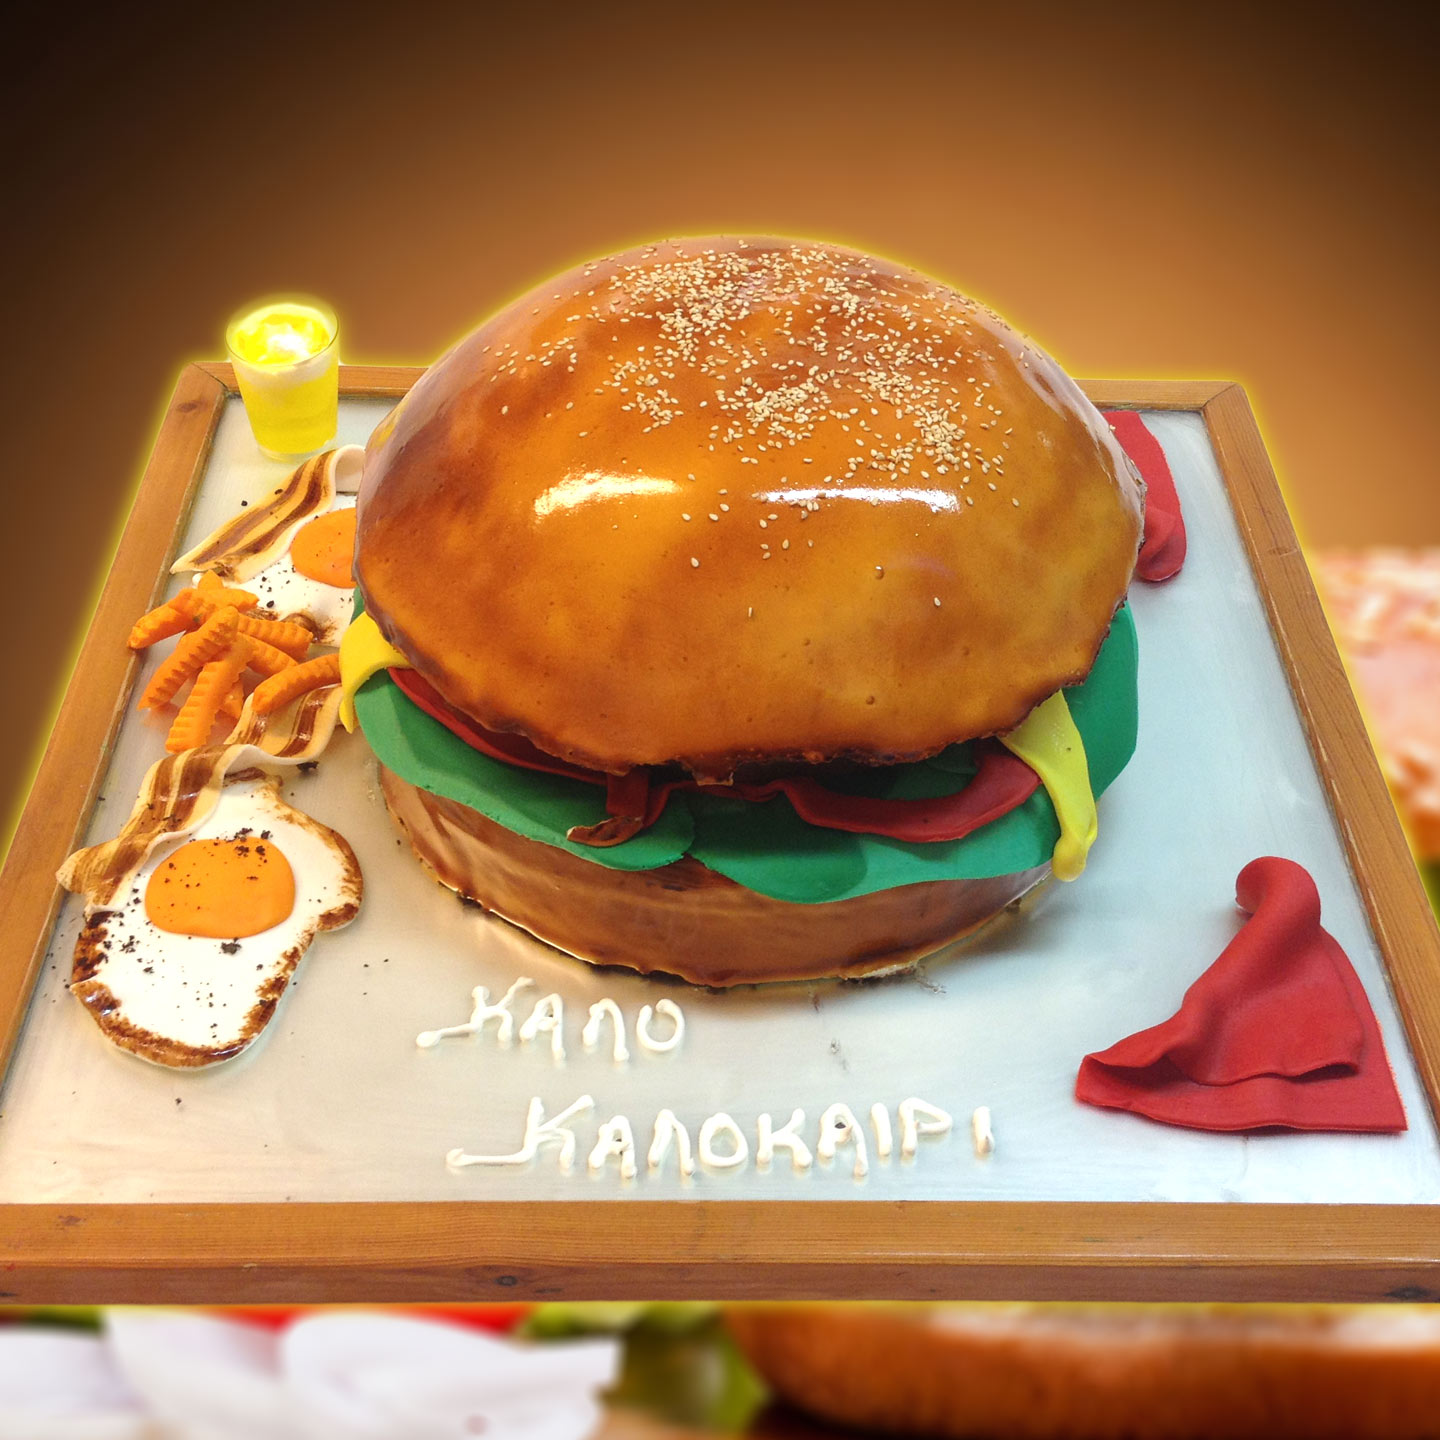 3D Hamburger